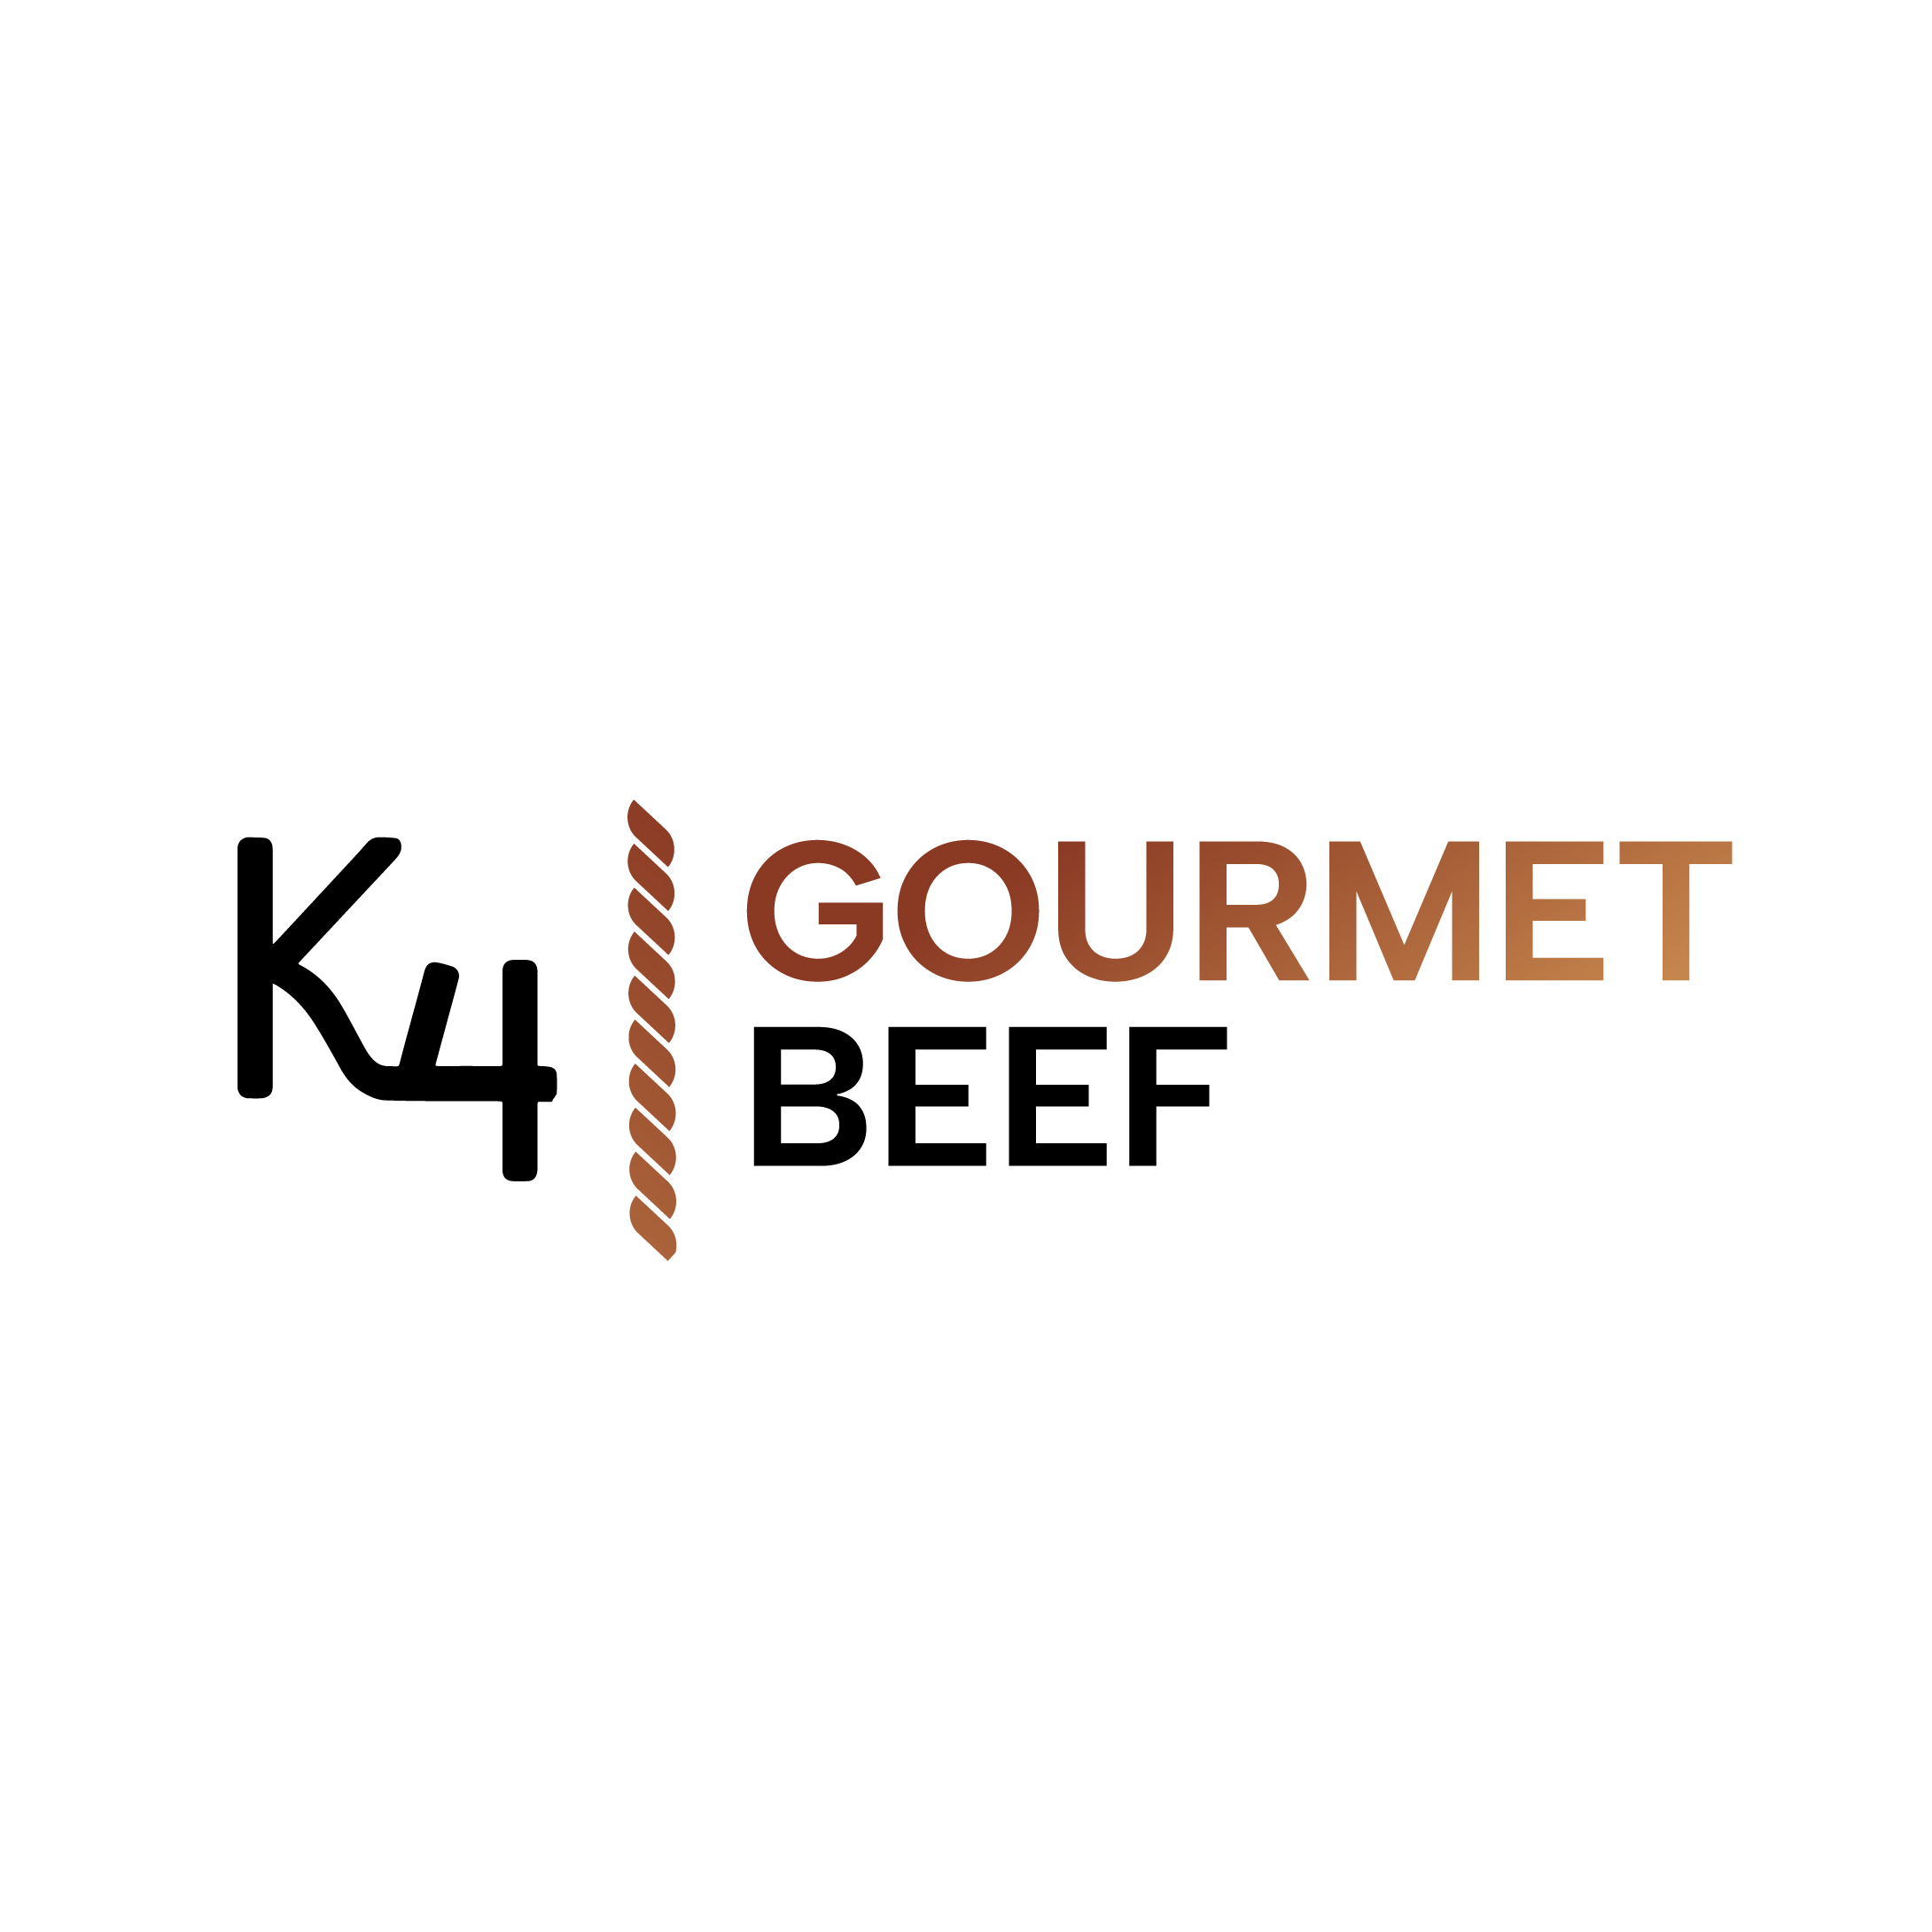 K4 Gourmet Beef